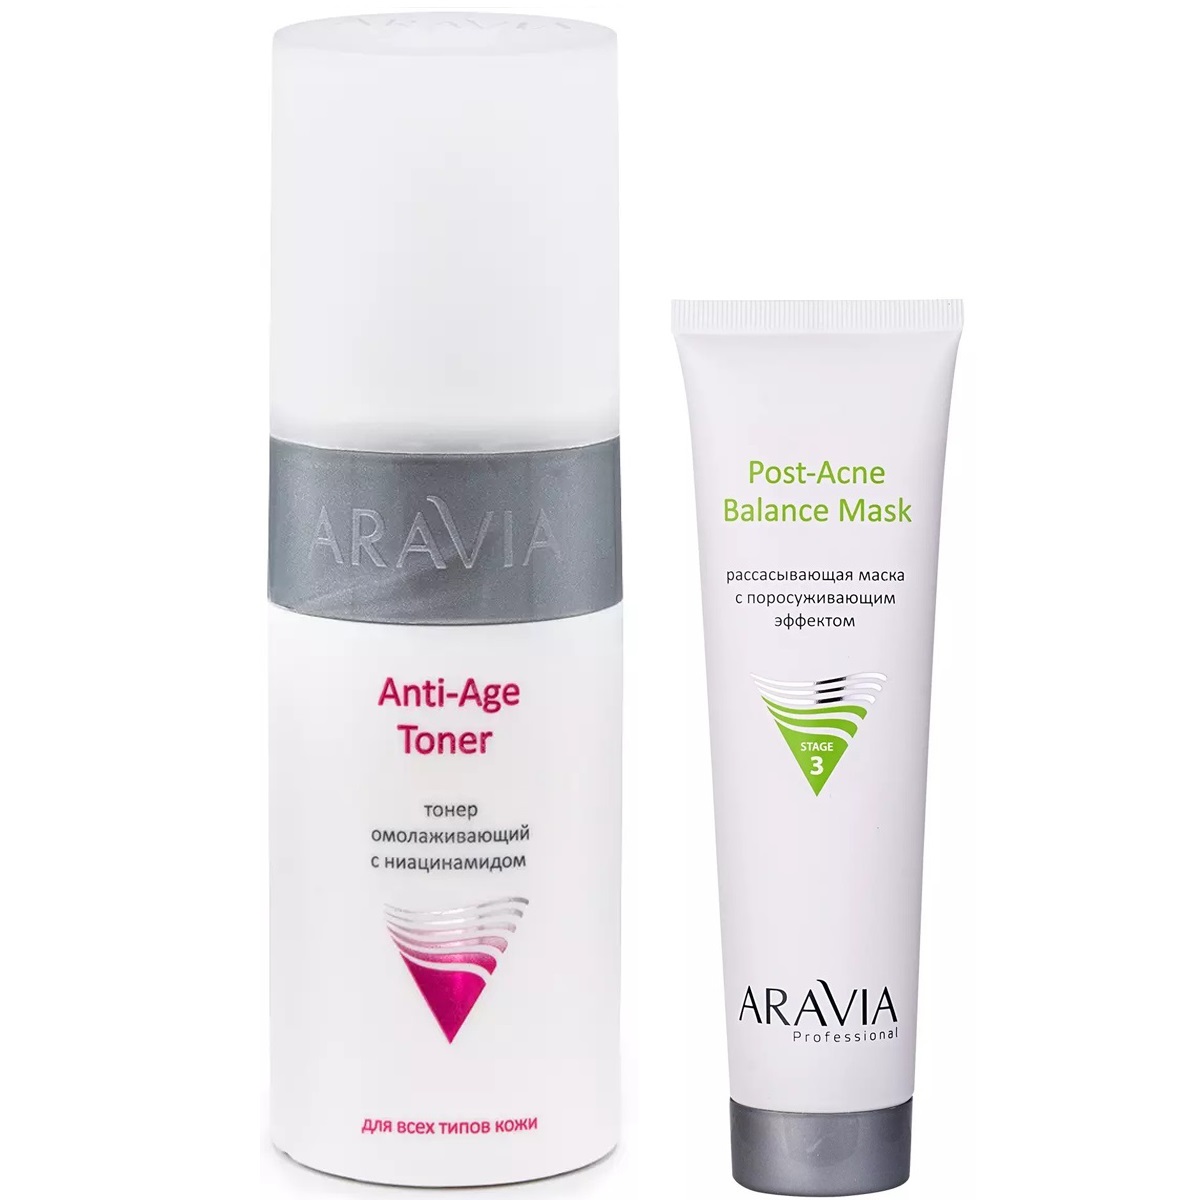 Aravia Professional Набор для ухода за кожей лица: маска, 100 мл + тонер, 150 мл (Aravia Professional, Уход за лицом)